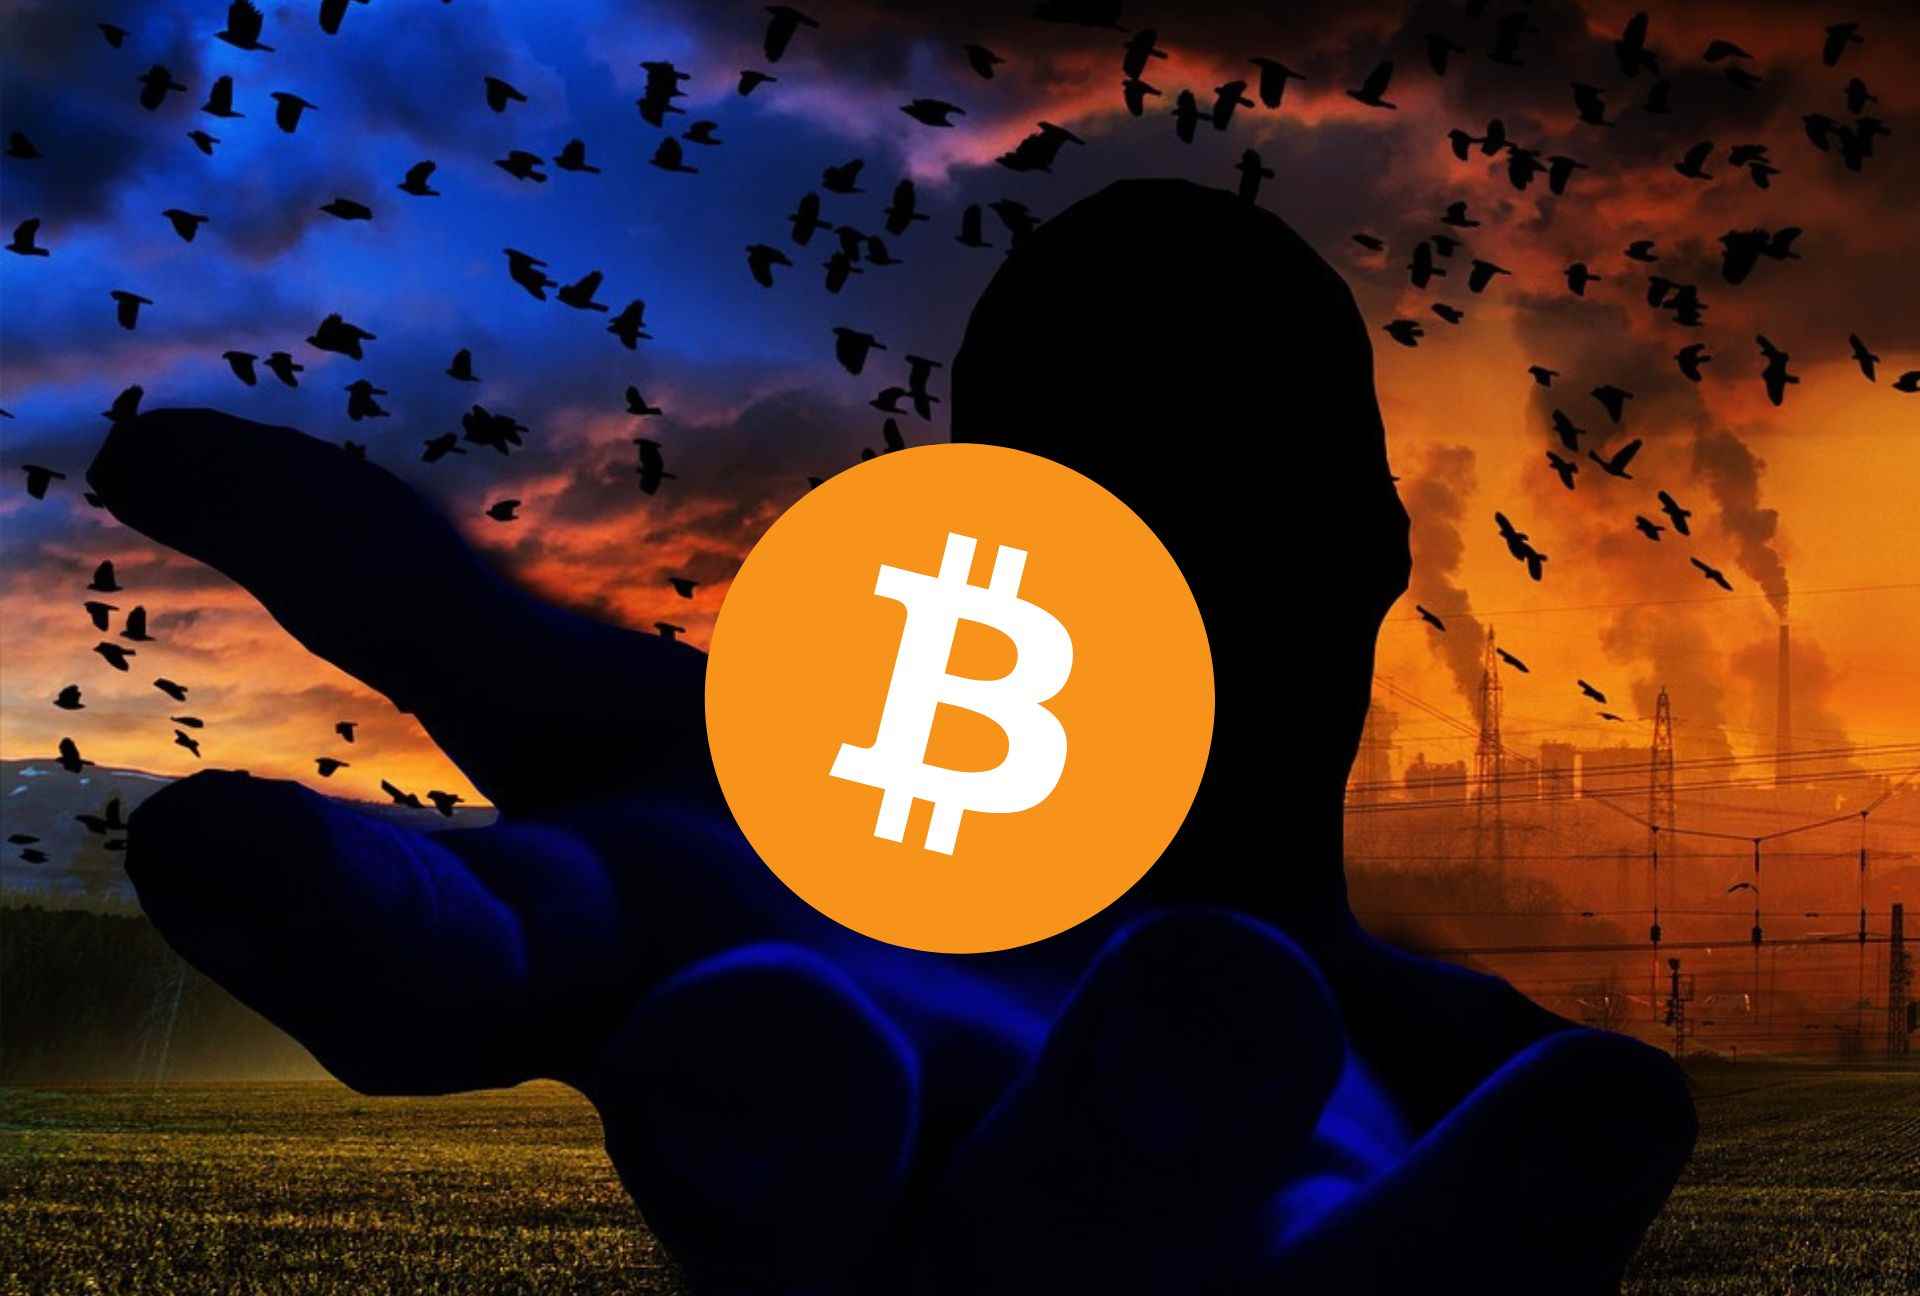 Ciemna postać trzymająca Bitcoina. W tle ciemne, zachmurzone niebo.